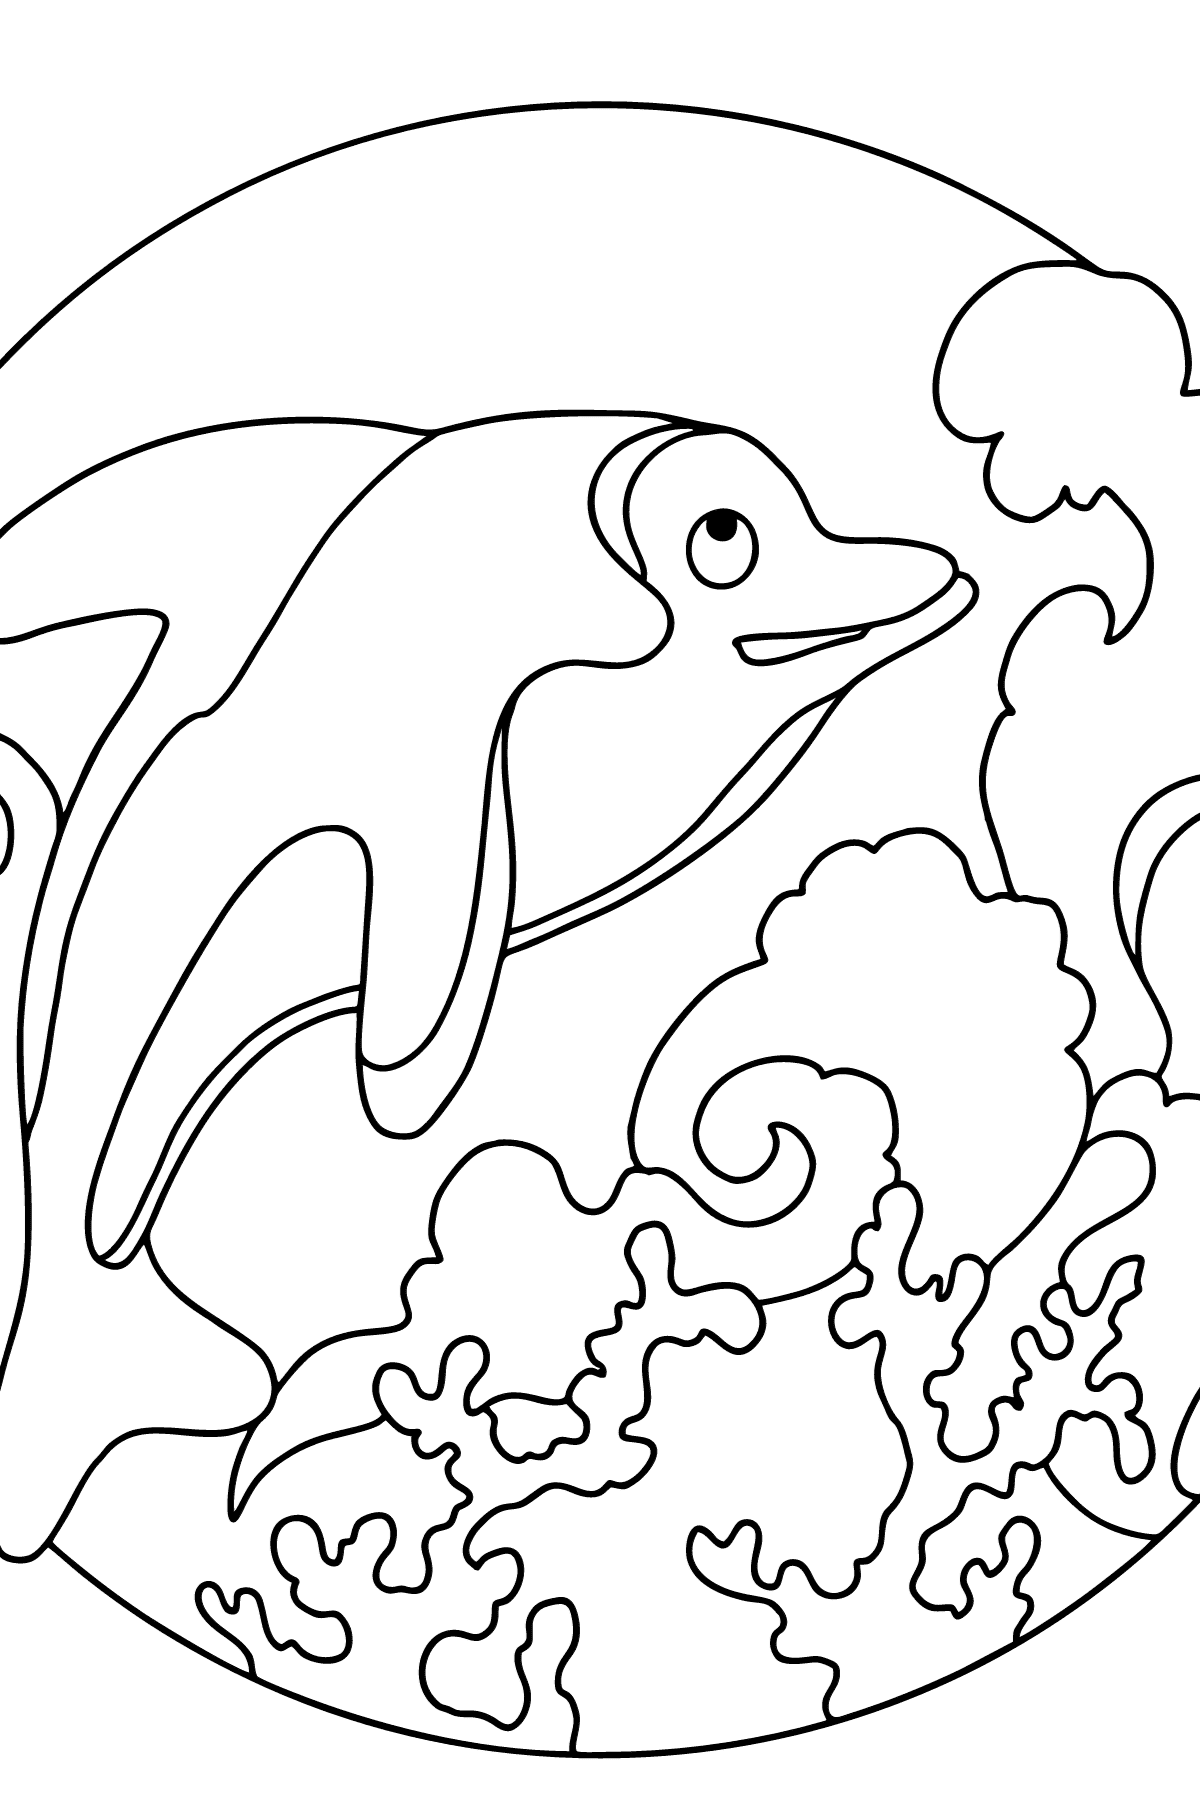 Розмальовка дельфіна для дітей - Розмальовки для дітей